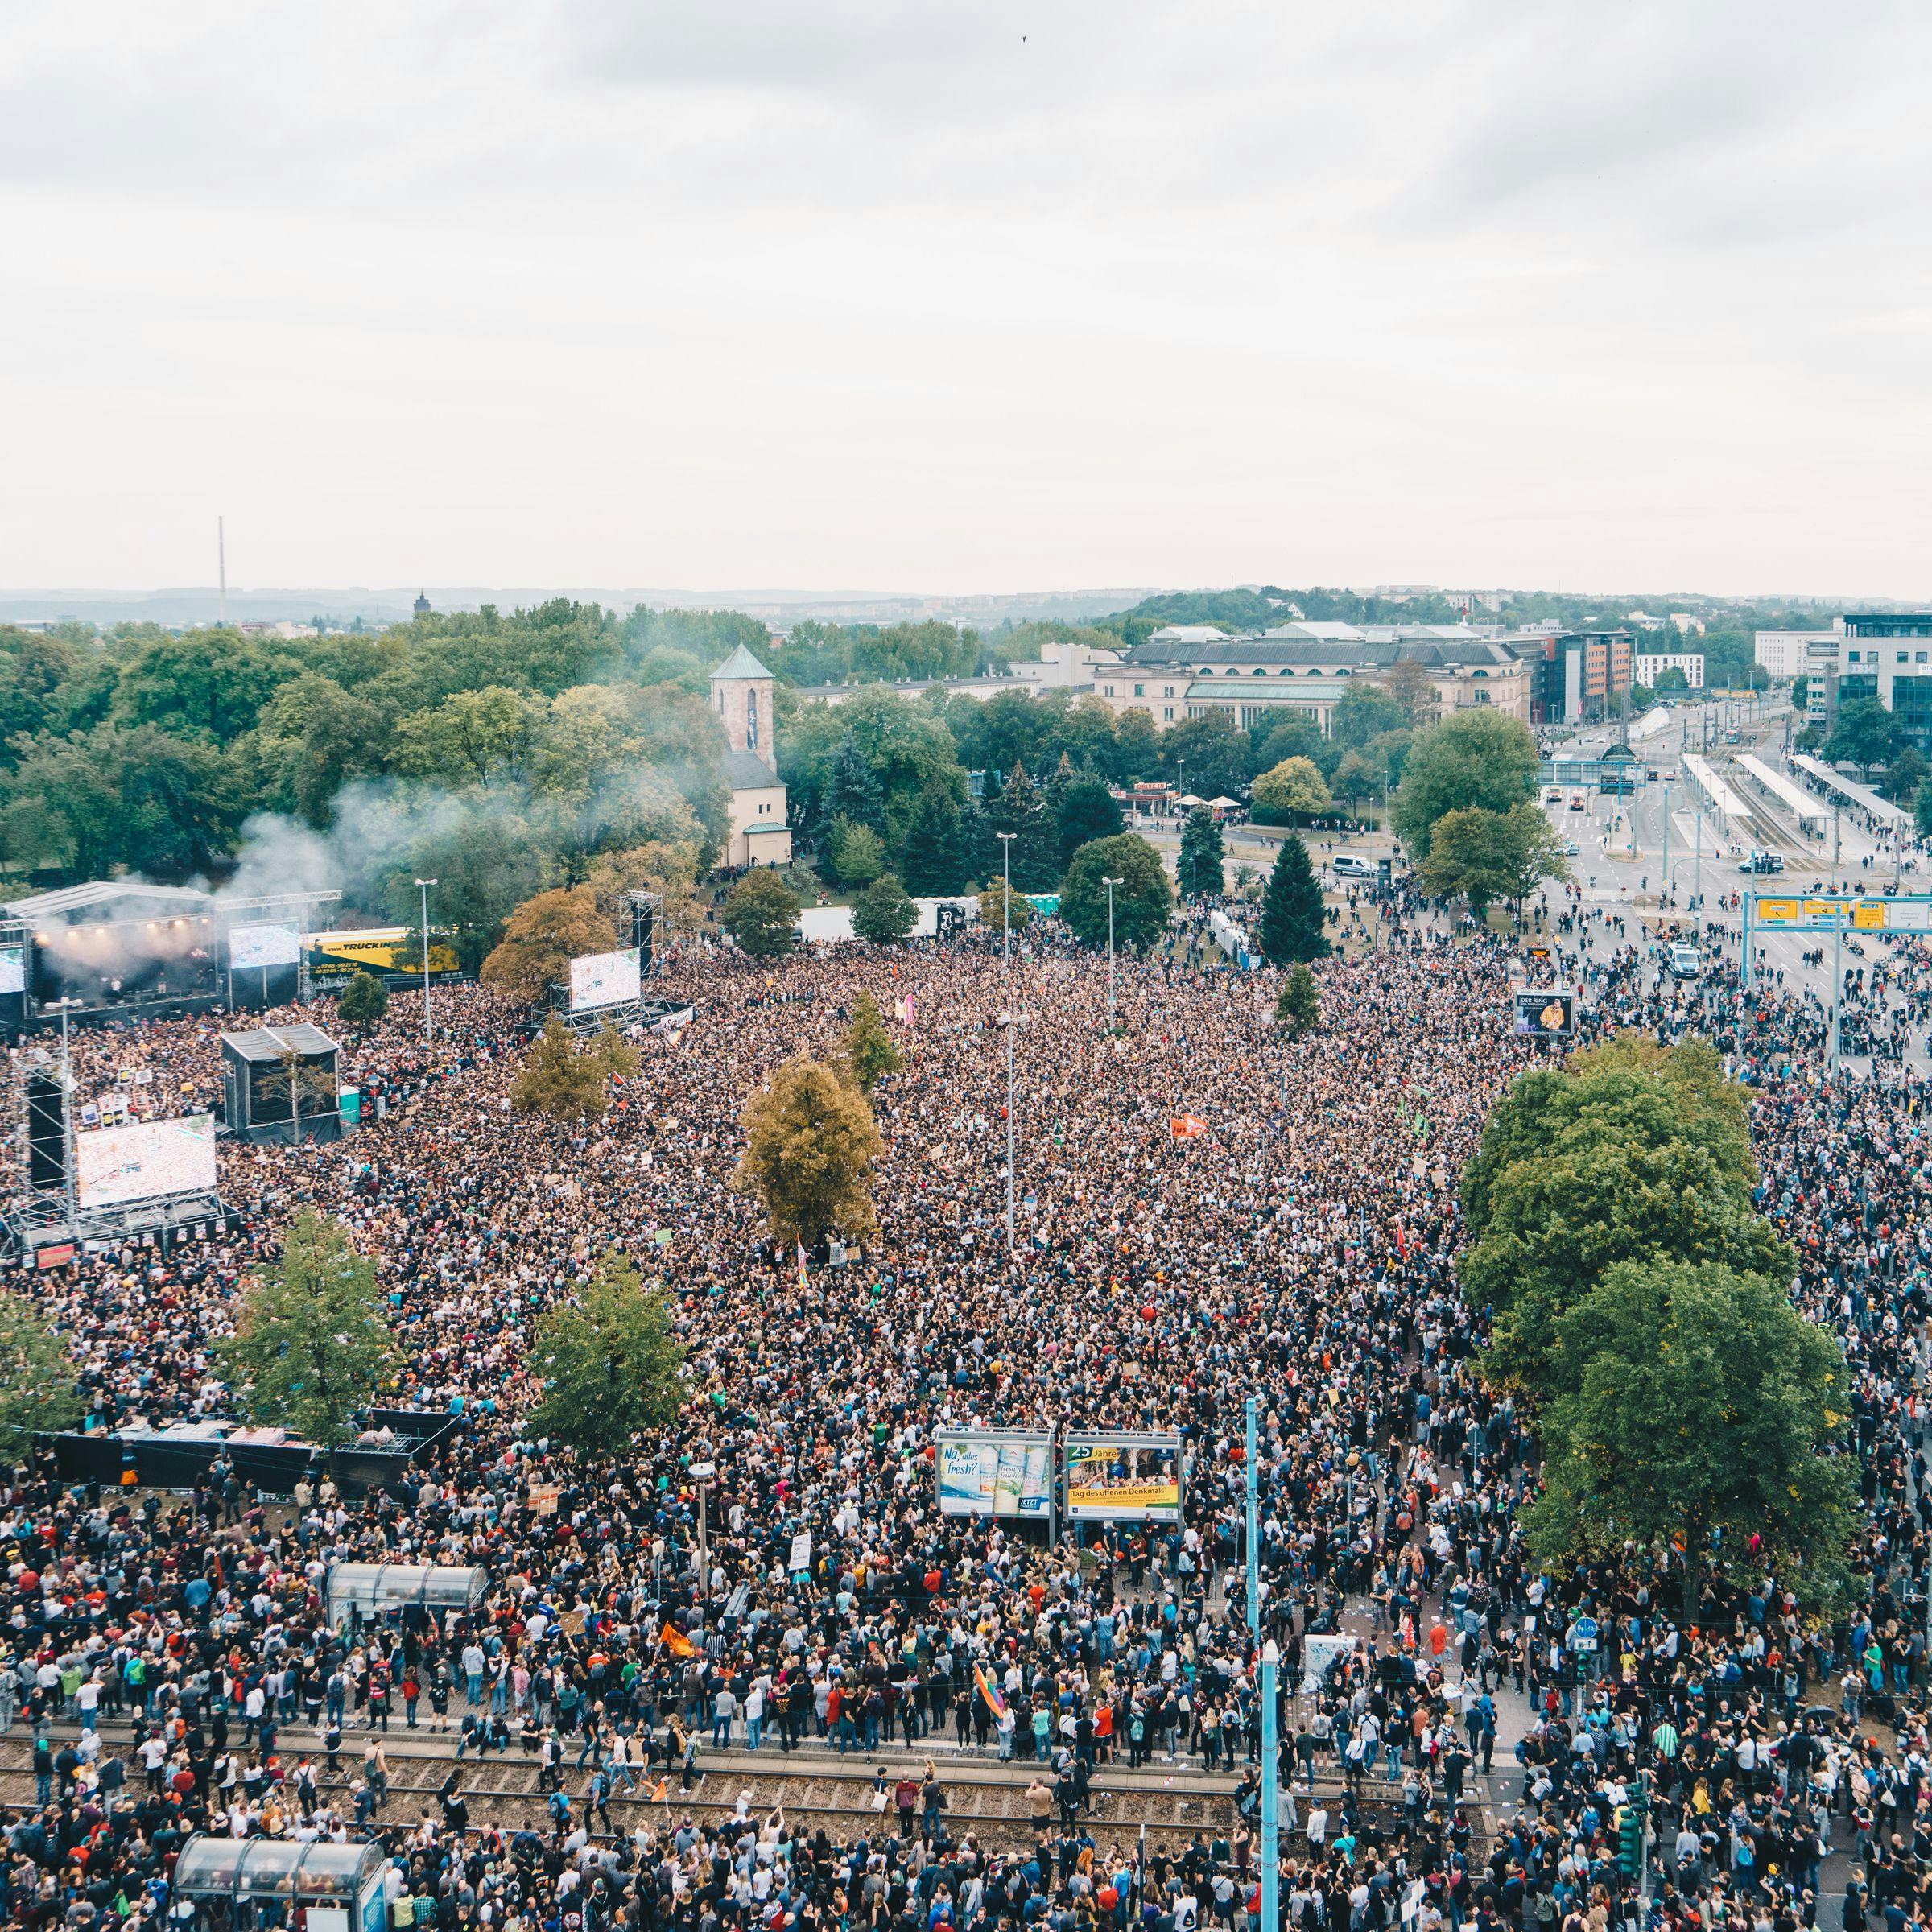 Se ve una foto del COSMOS 2018, sobre la cual una multitud de personas (fotografiadas desde arriba) llena completamente el espacio frente al escenario. Las calles adyacentes también están llenas de gente.